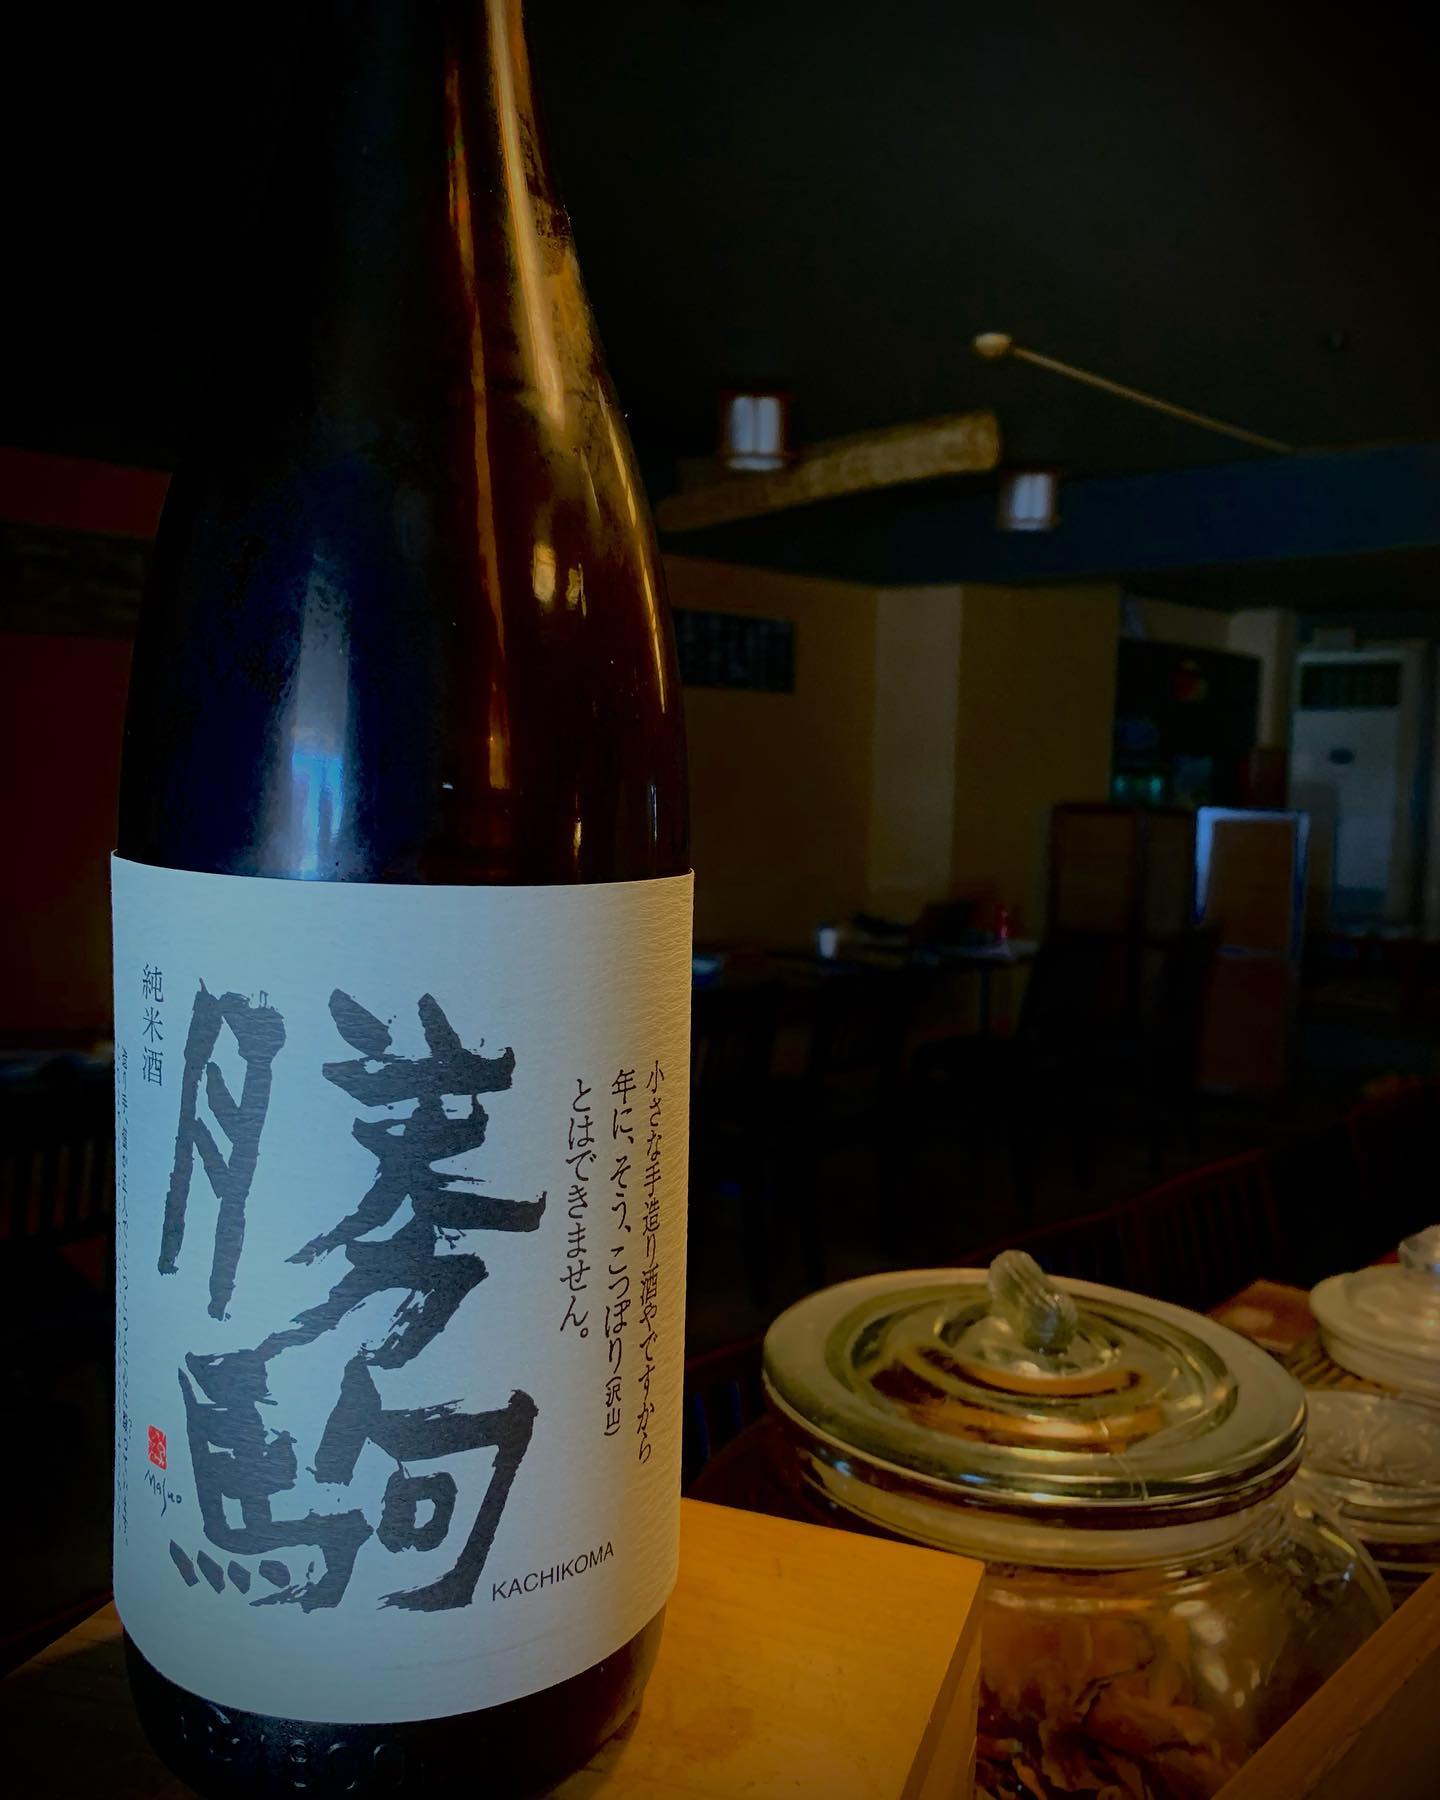 本日の日本酒紹介️
「勝駒」

辛口でスッキリな日本酒で、香りは控えめ、米の旨味が艶やかにのり、硬質で凛とした味わいが上質な紬を思わせる。

 #